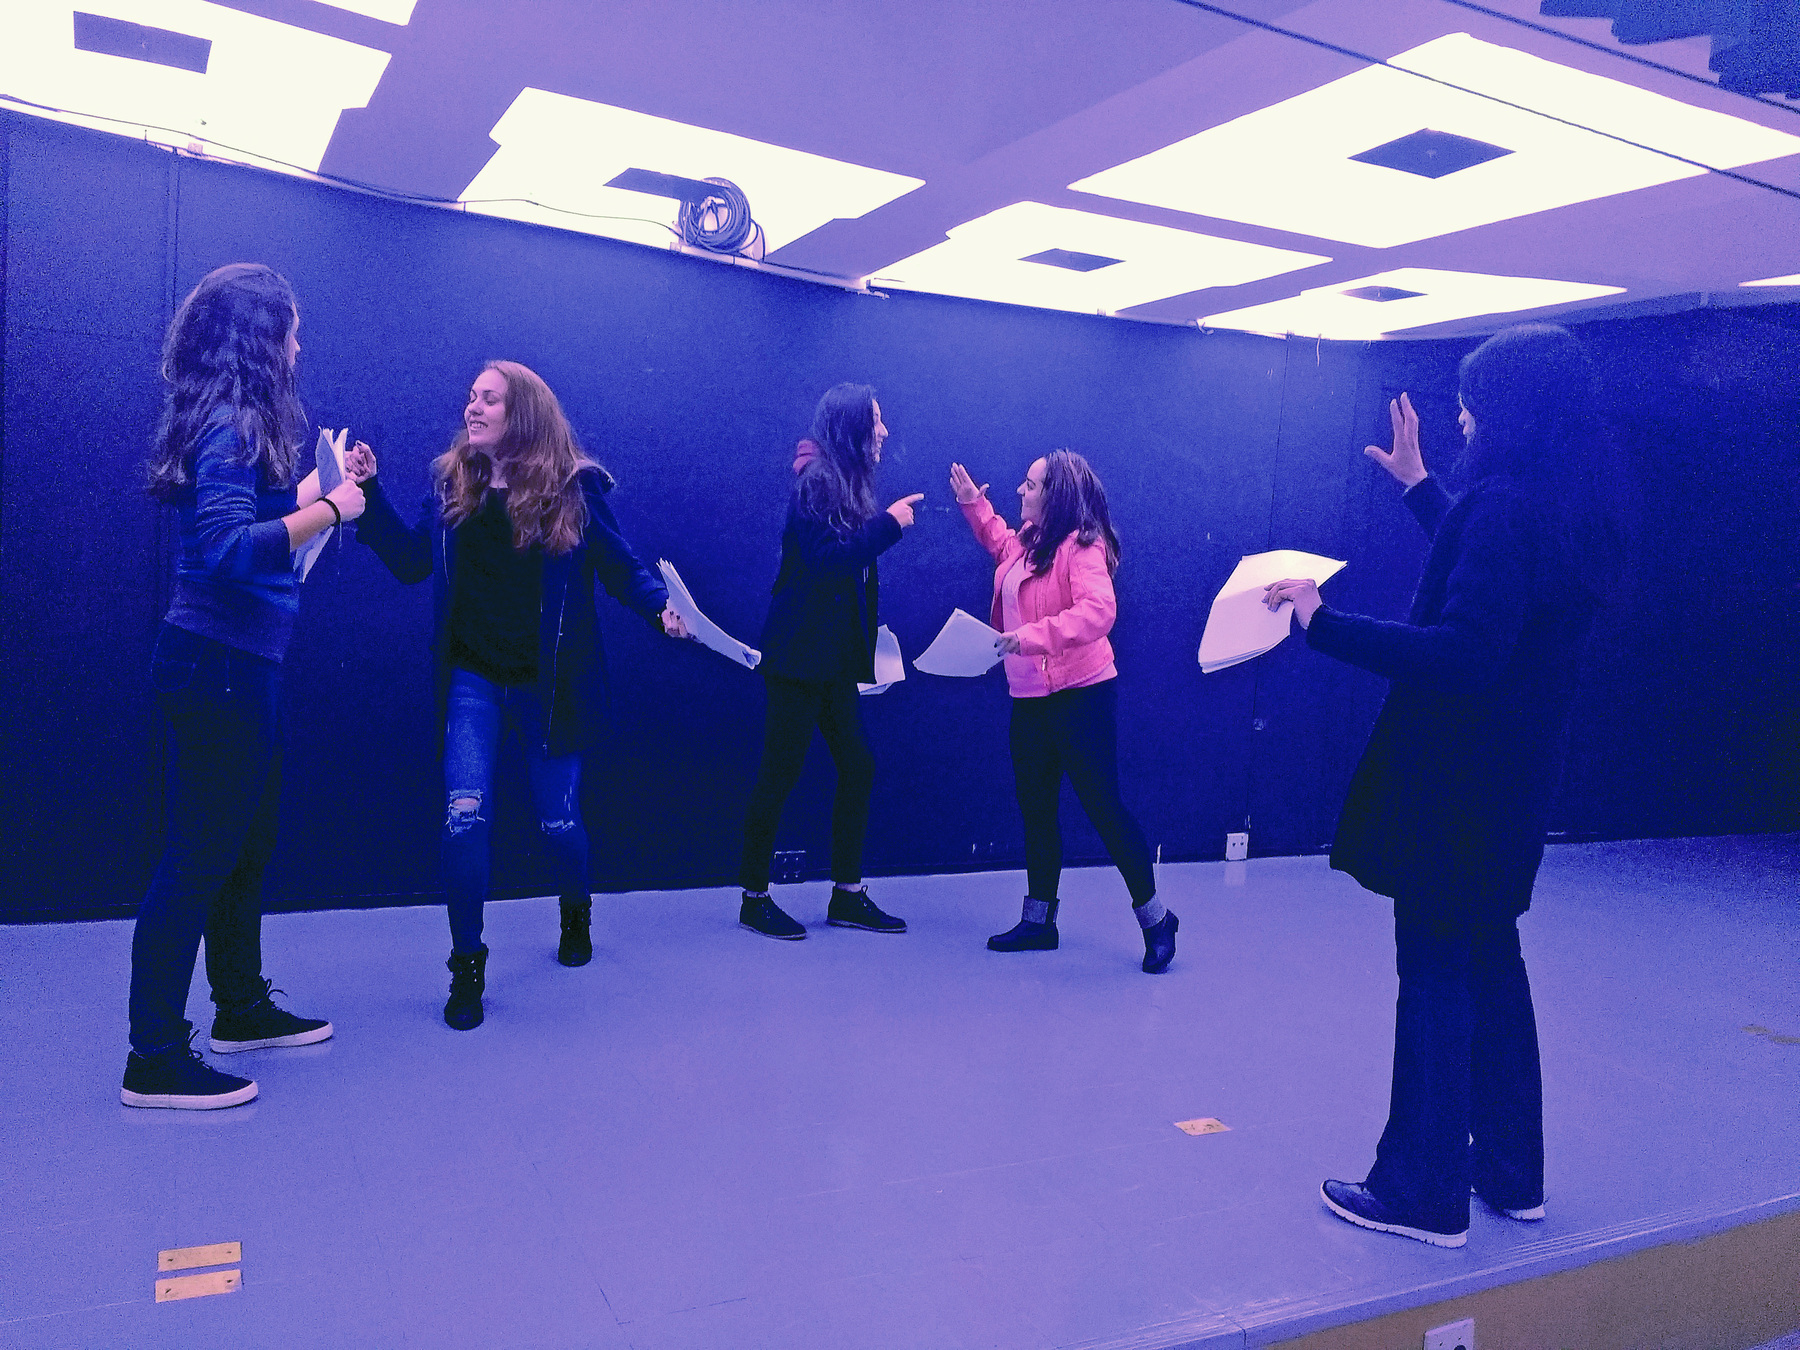 Fotografia. Quatro atrizes em uma sala escura, de paredes pretas, ensaiam em duplas com papéis nas mãos, enquanto são observadas por uma mulher que faz um gesto com as mãos.